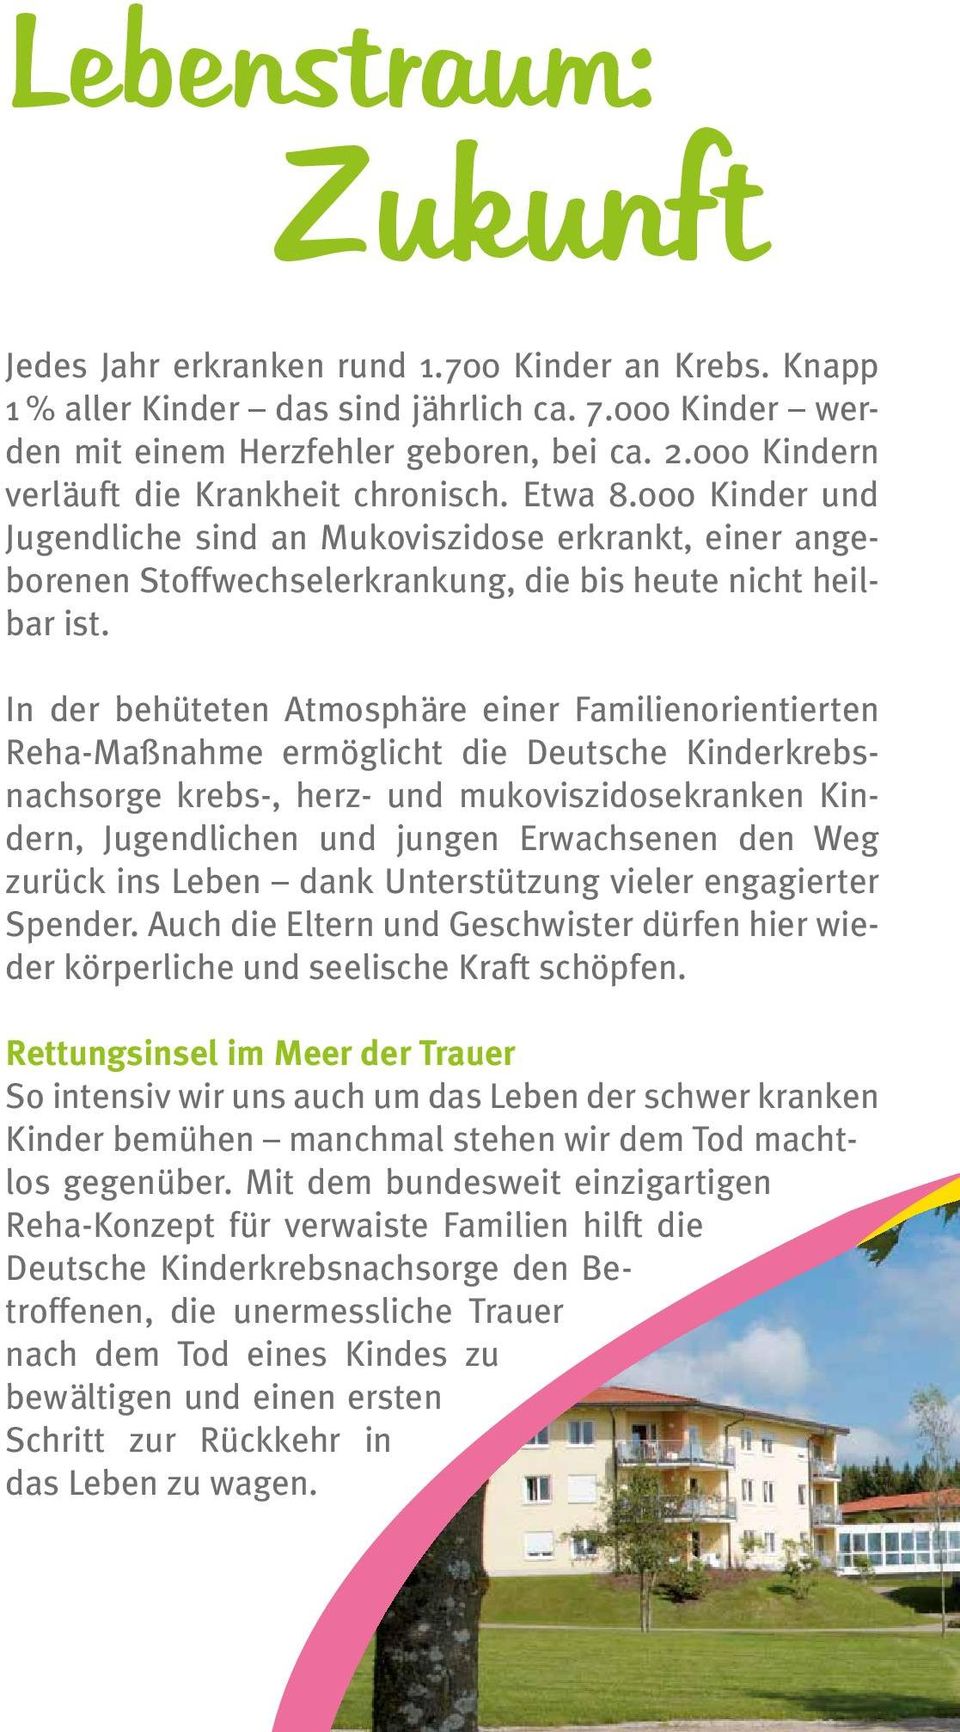 In der behüteten Atmosphäre einer Familienorientierten Reha-Maßnahme ermöglicht die Deutsche Kinderkrebsnachsorge krebs-, herz- und mukoviszidosekranken Kindern, Jugendlichen und jungen Erwachsenen